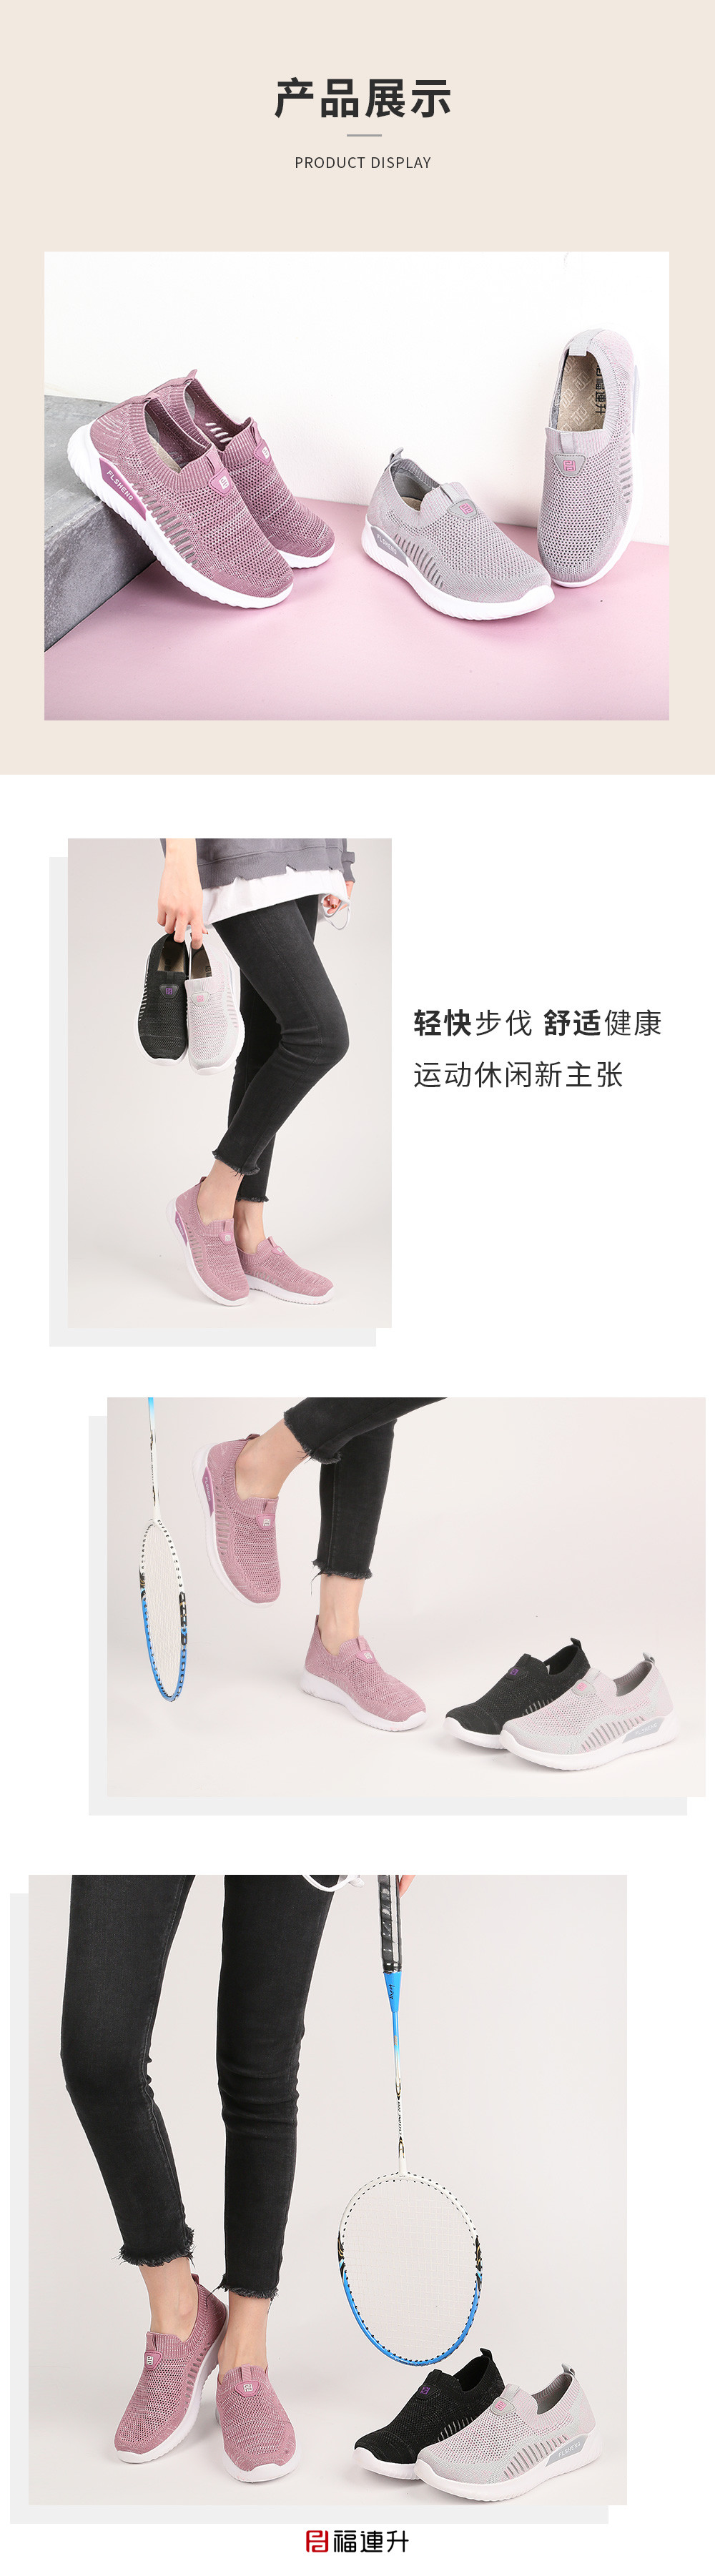 福连升夏女士大网飞织透气运动凉鞋大码老北京布鞋(图6)